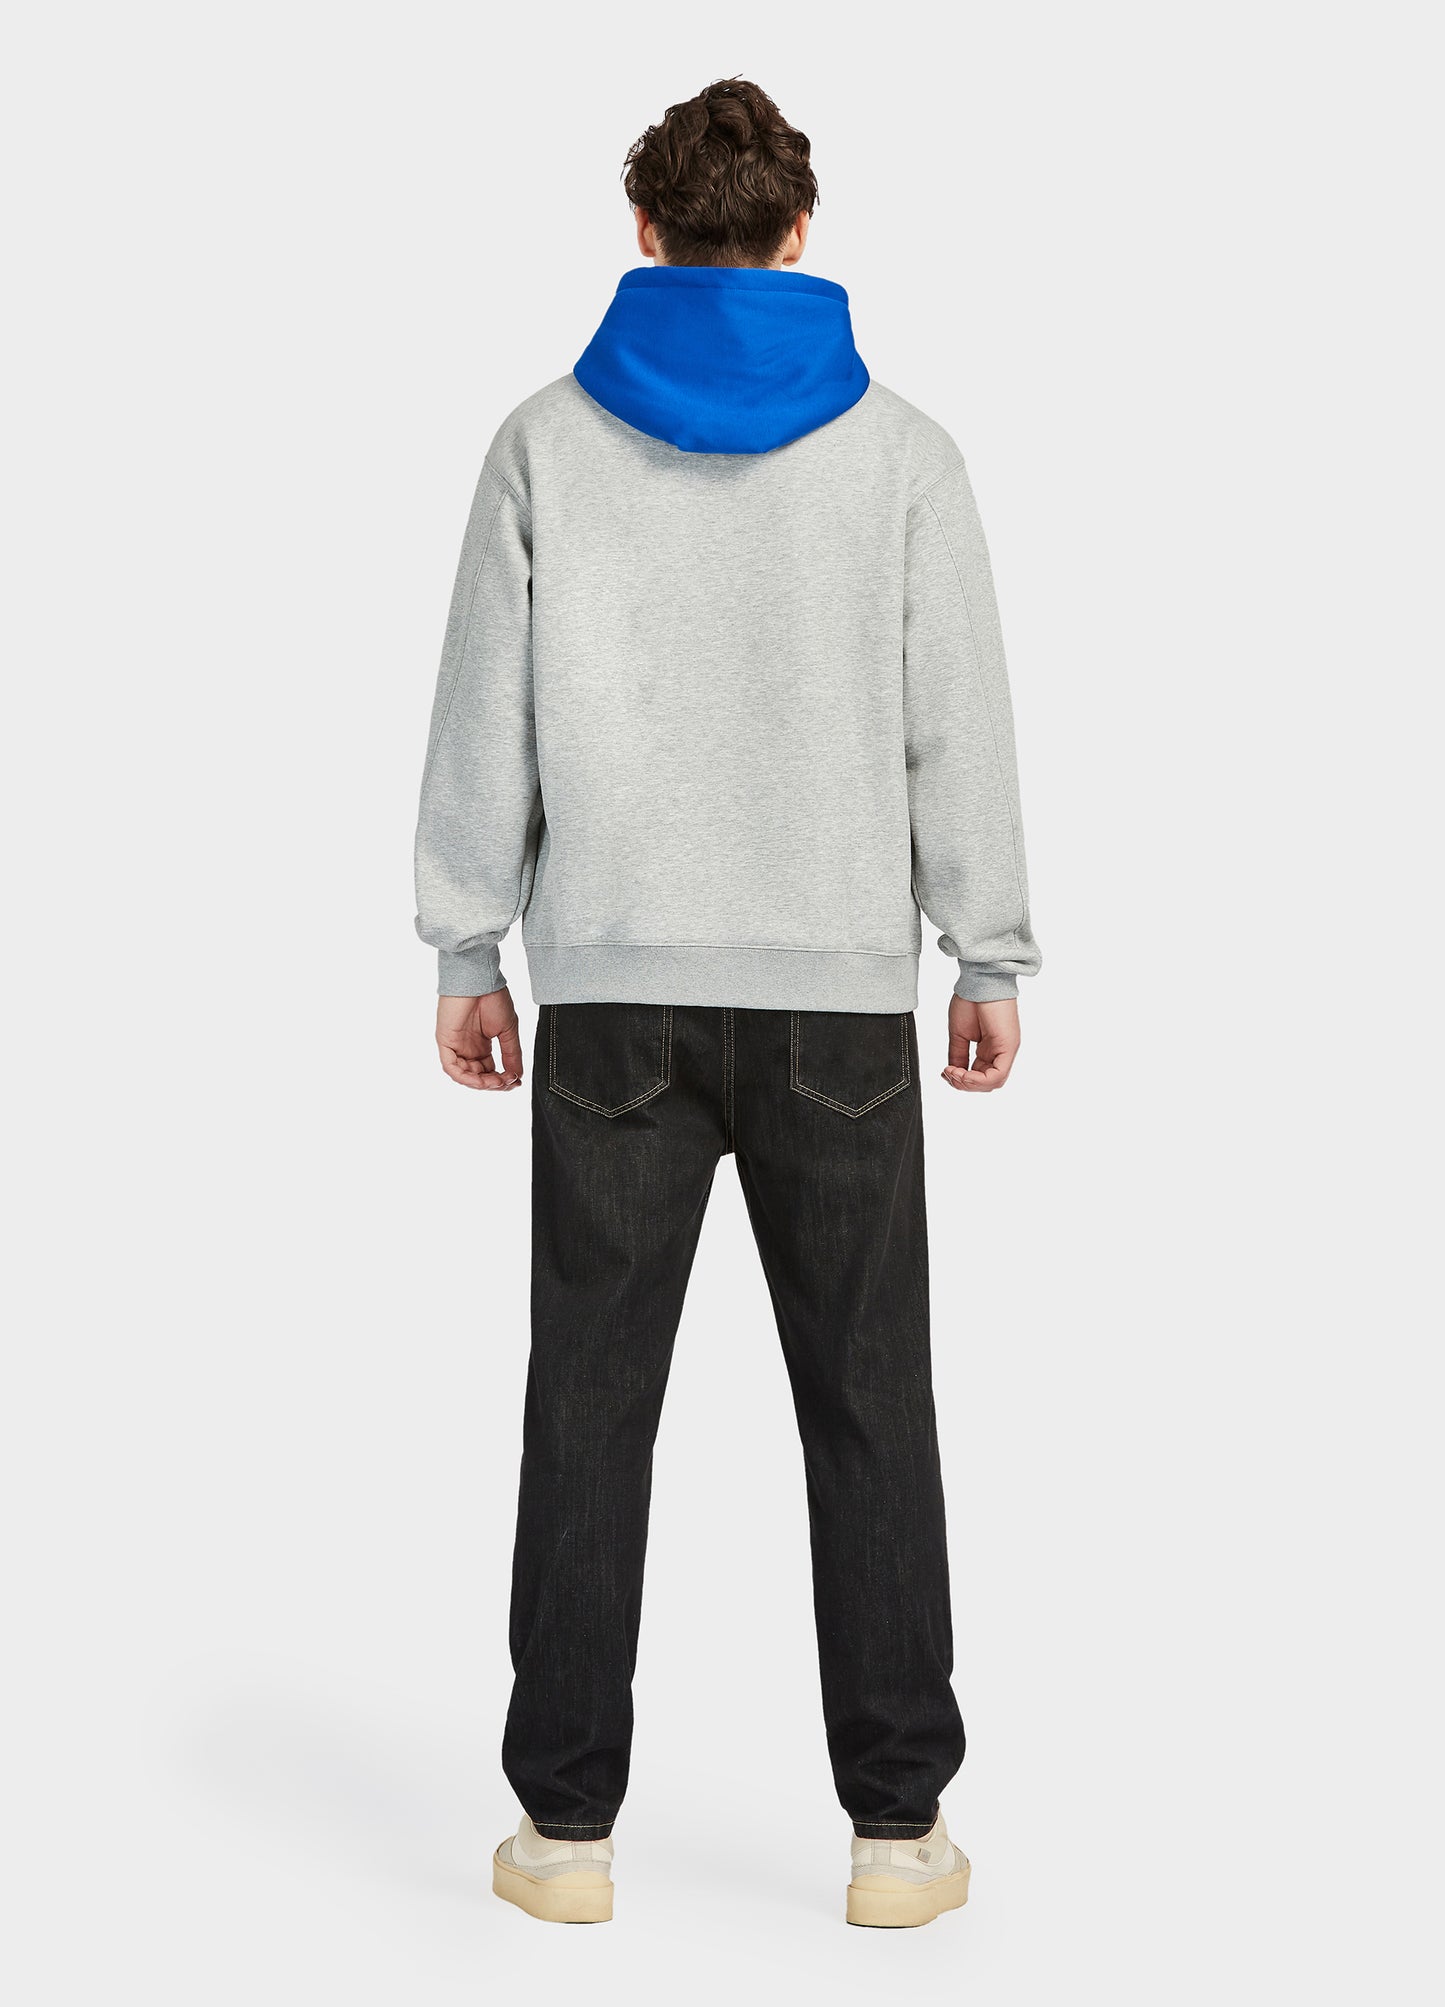 Finepeek Men's Color Block Fleece Hoodie Sweatshirt